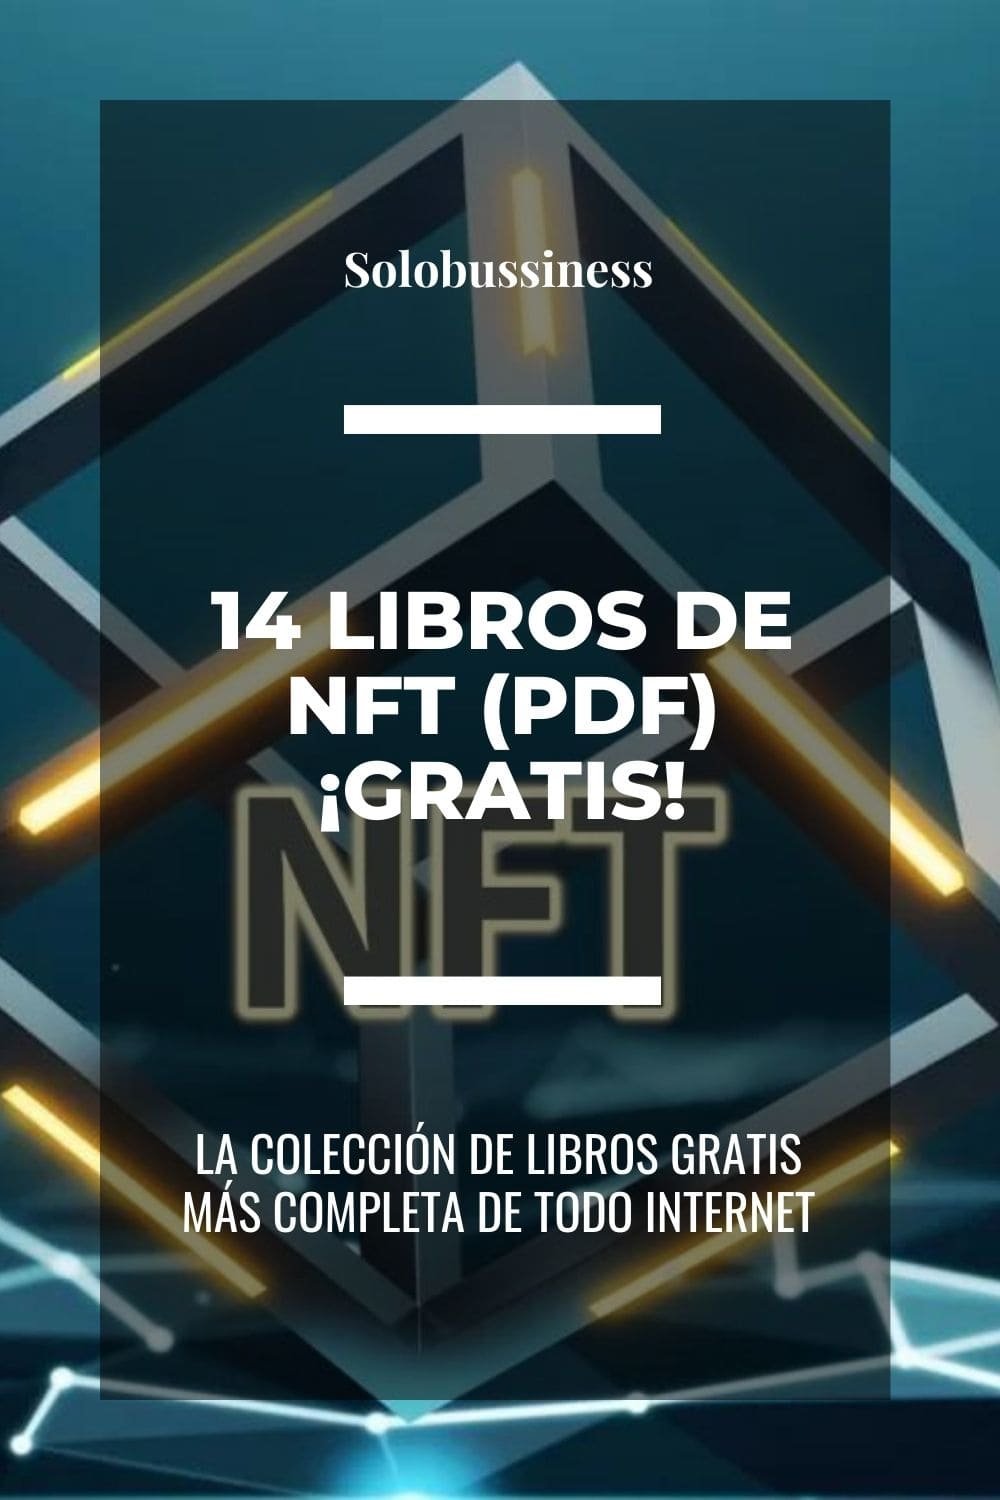 Libros de NFT en formato pdf